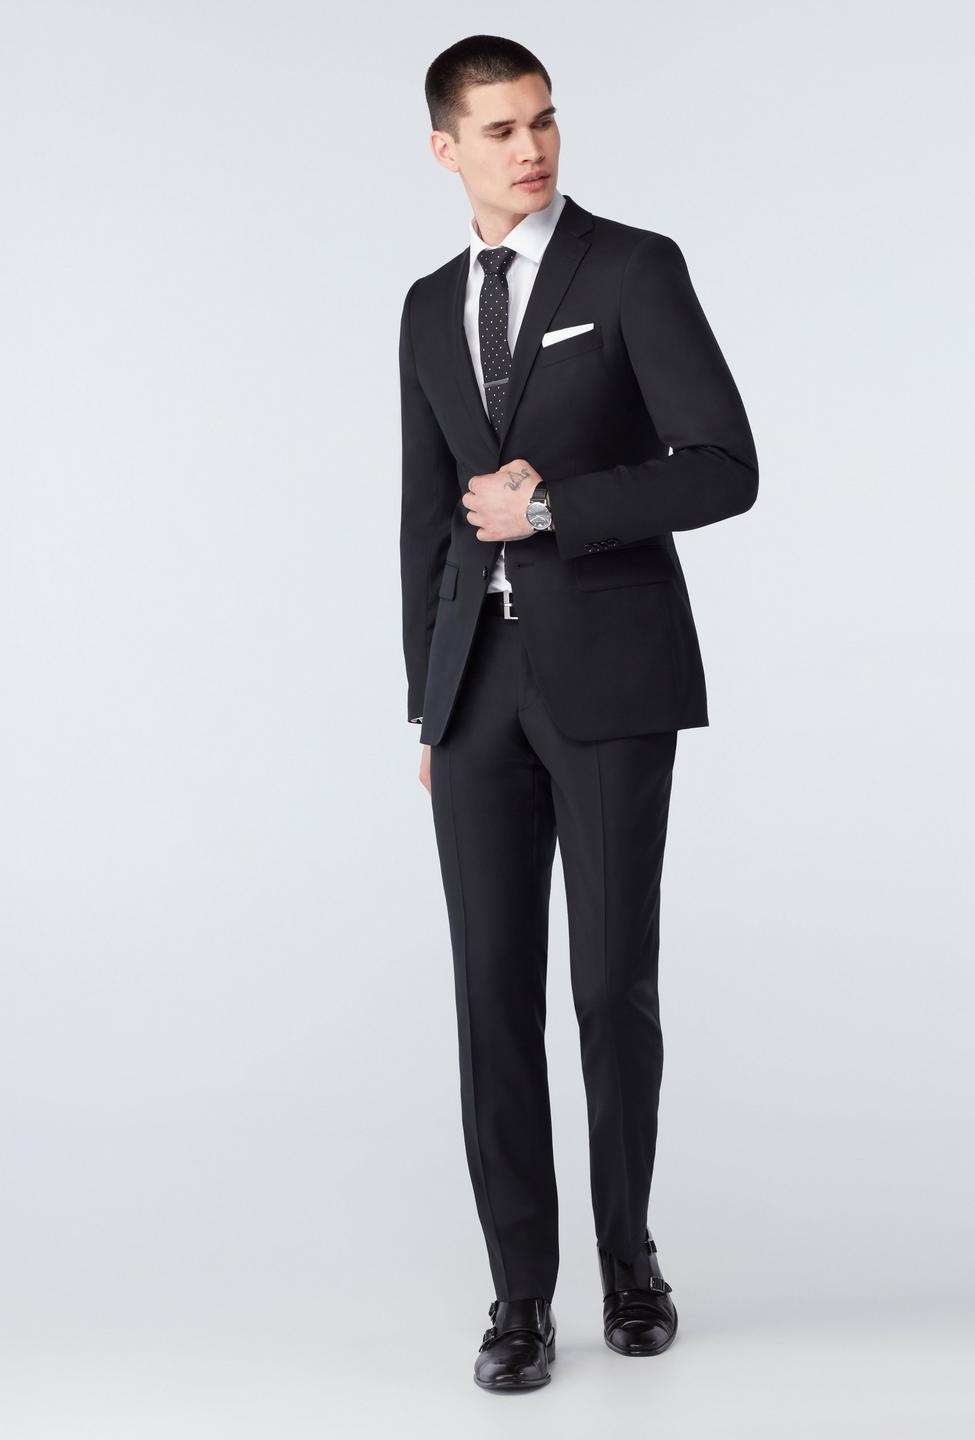 Highworth Black Suit